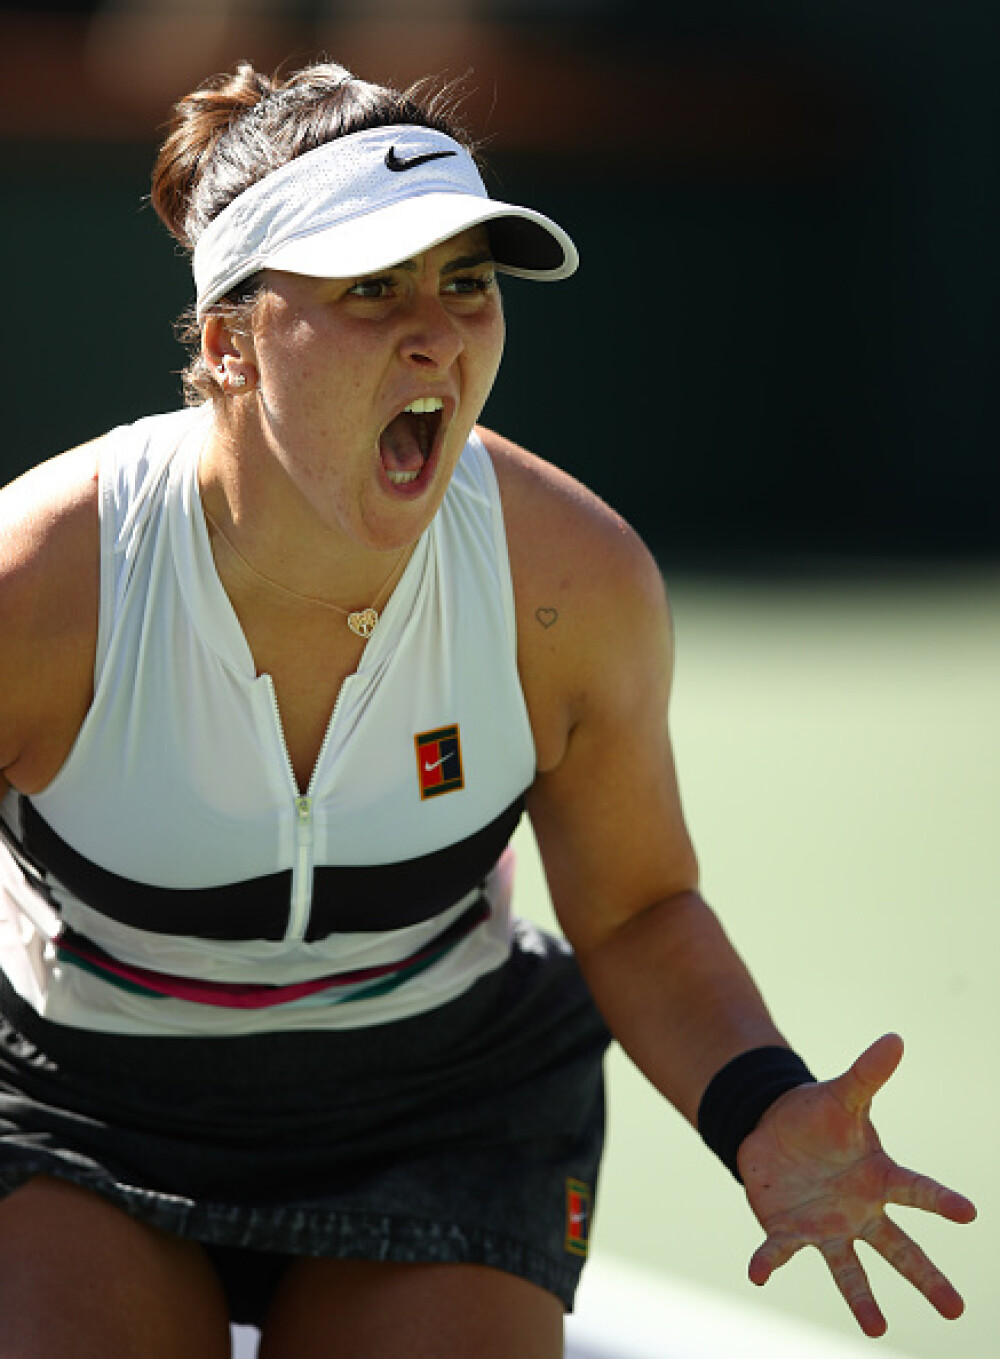 Reacția unei legende din tenis după victoria Biancăi Andreescu: ”S-a născut o stea” - Imaginea 4